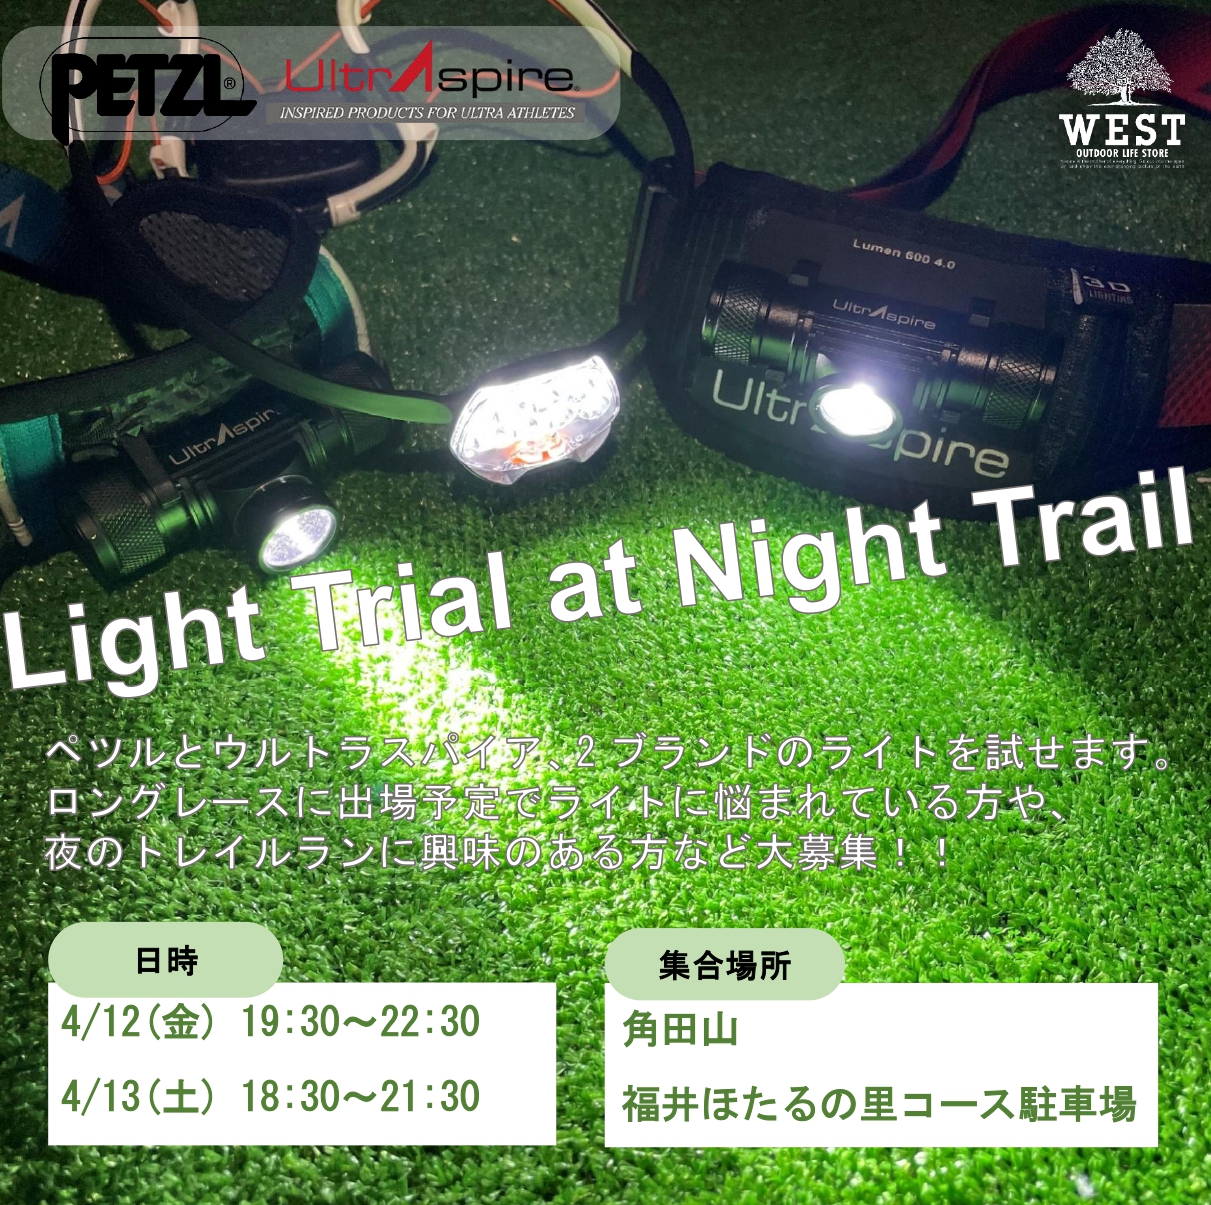 夜のトレランイベント「Light Trial at Night Trail」